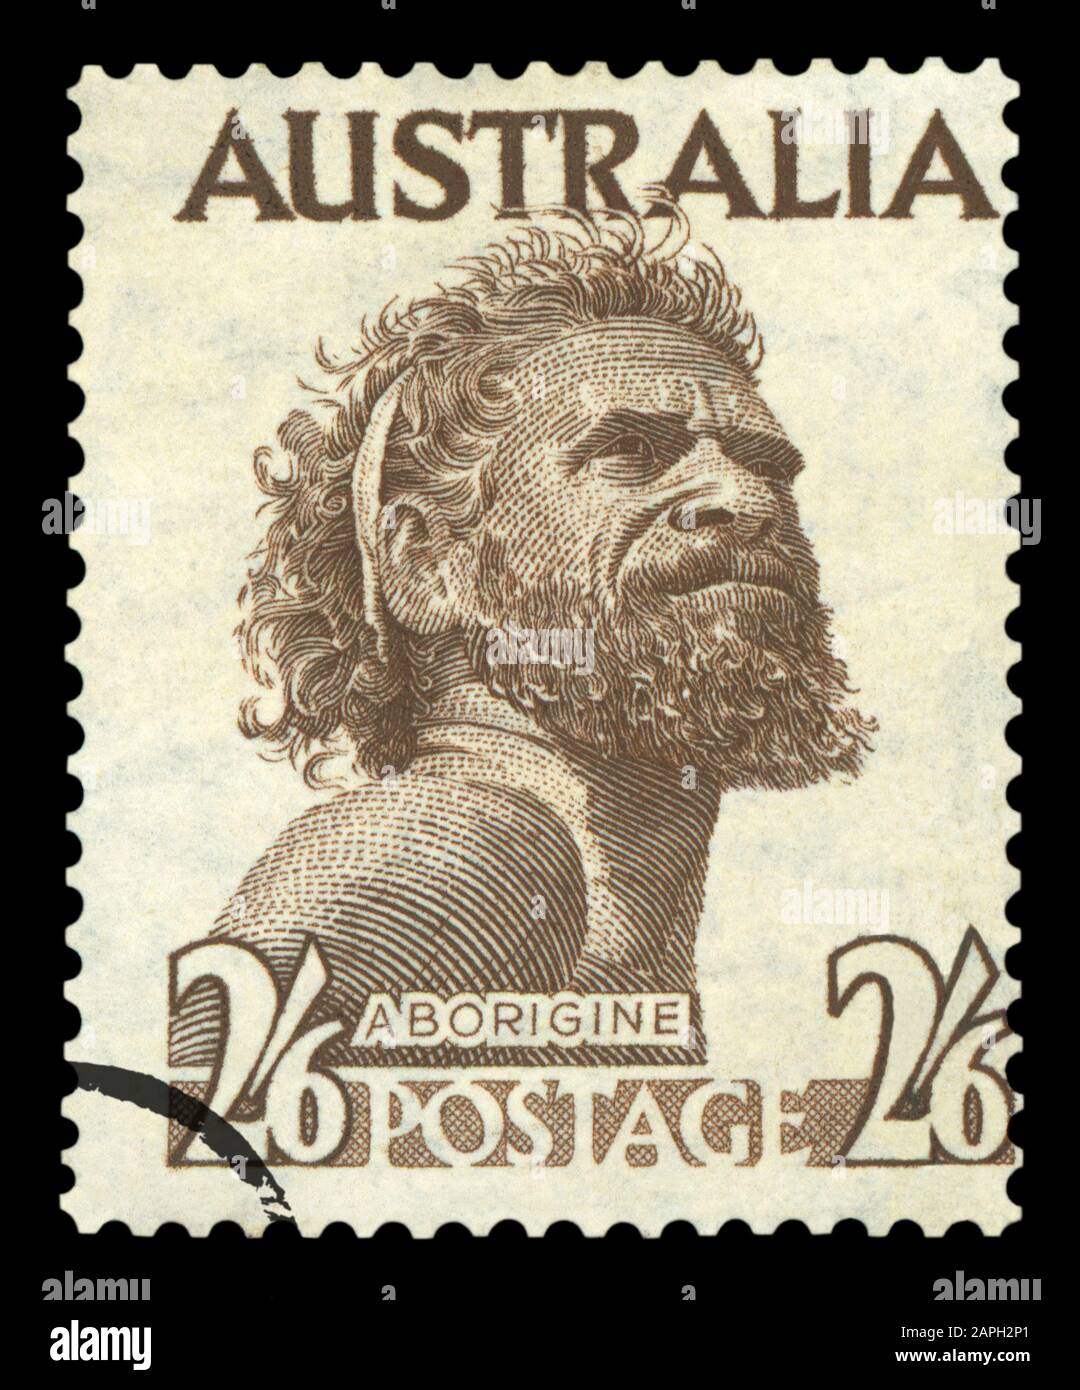 Australien - ca. 1952: eine Briefmarke im Australien gedruckt mit einer Aborigine Mann namens One Pound Jimmy, circa 1952. Stockfoto